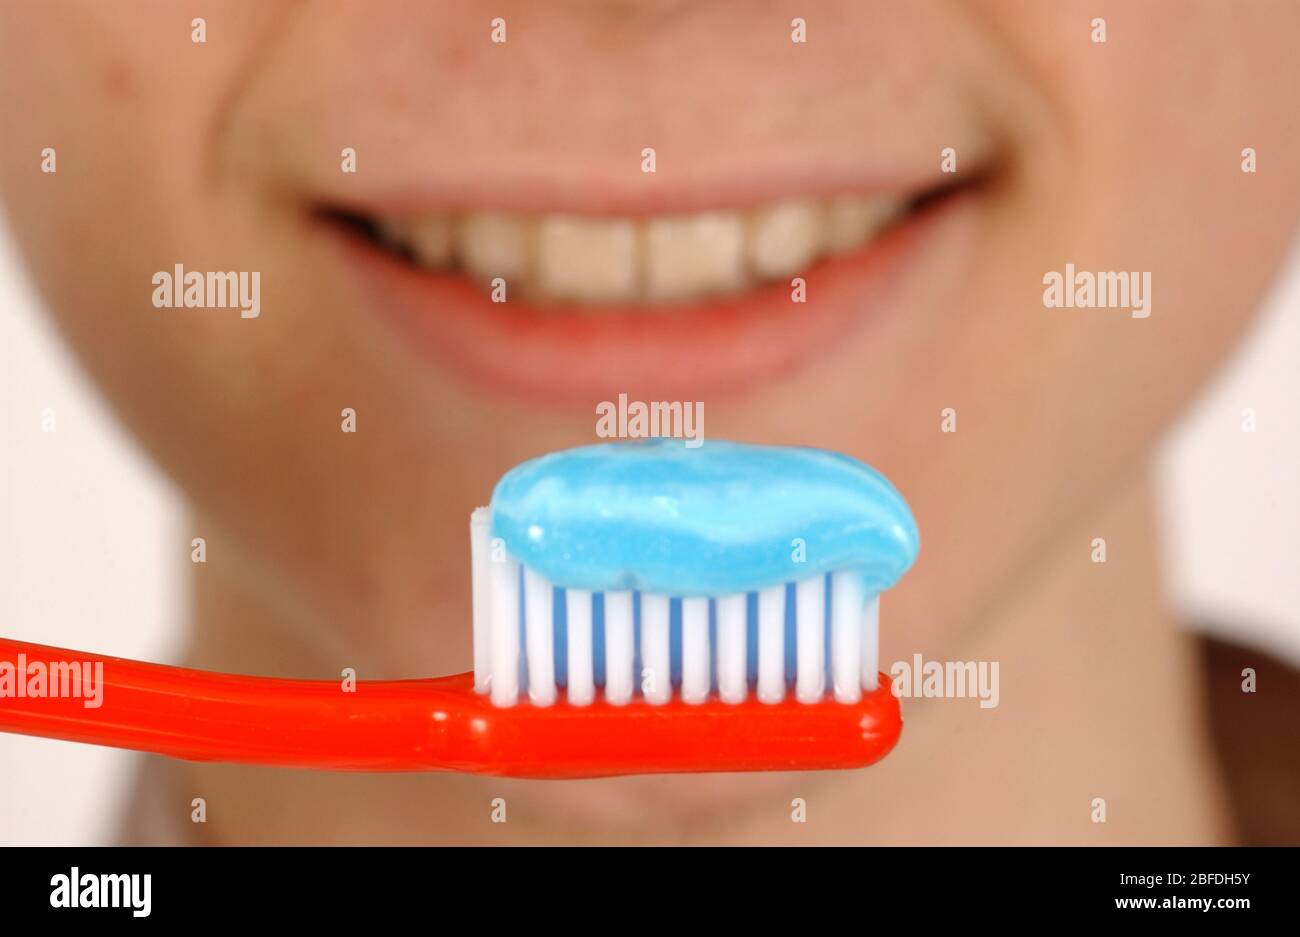 Mann, der Zahnbürste mit Zahnpasta auf ihm vor seinen Zähnen hält -Model  veröffentlicht Stockfotografie - Alamy